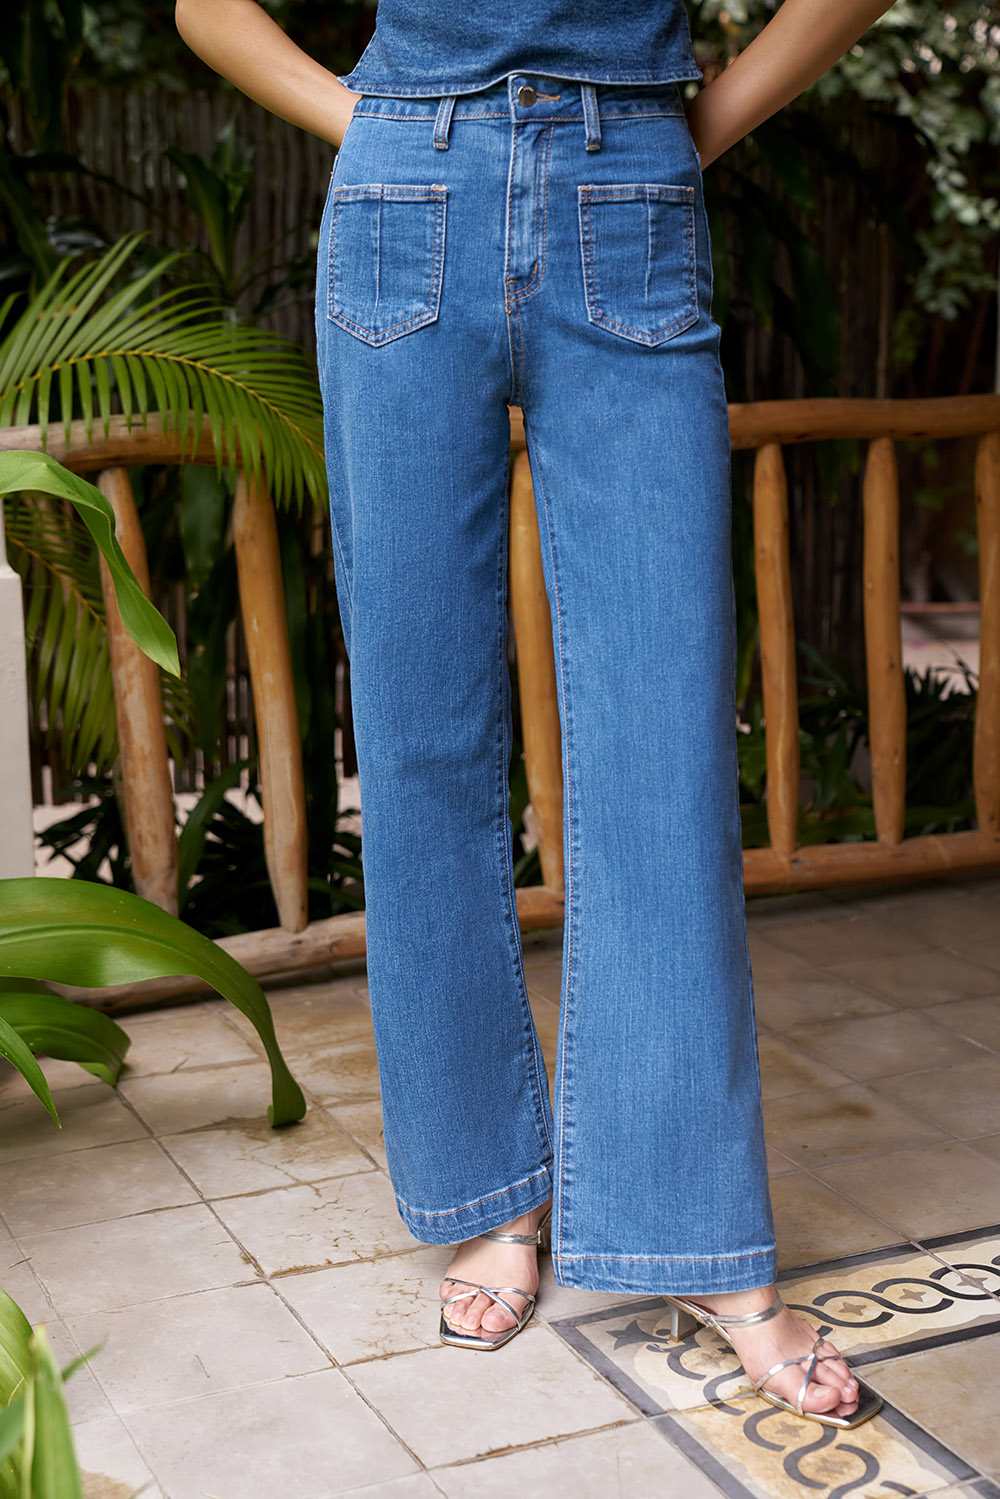 DOTTIE - Quần jeans ống đứng 4 túi nữ - Xanh nhạt - Q0109